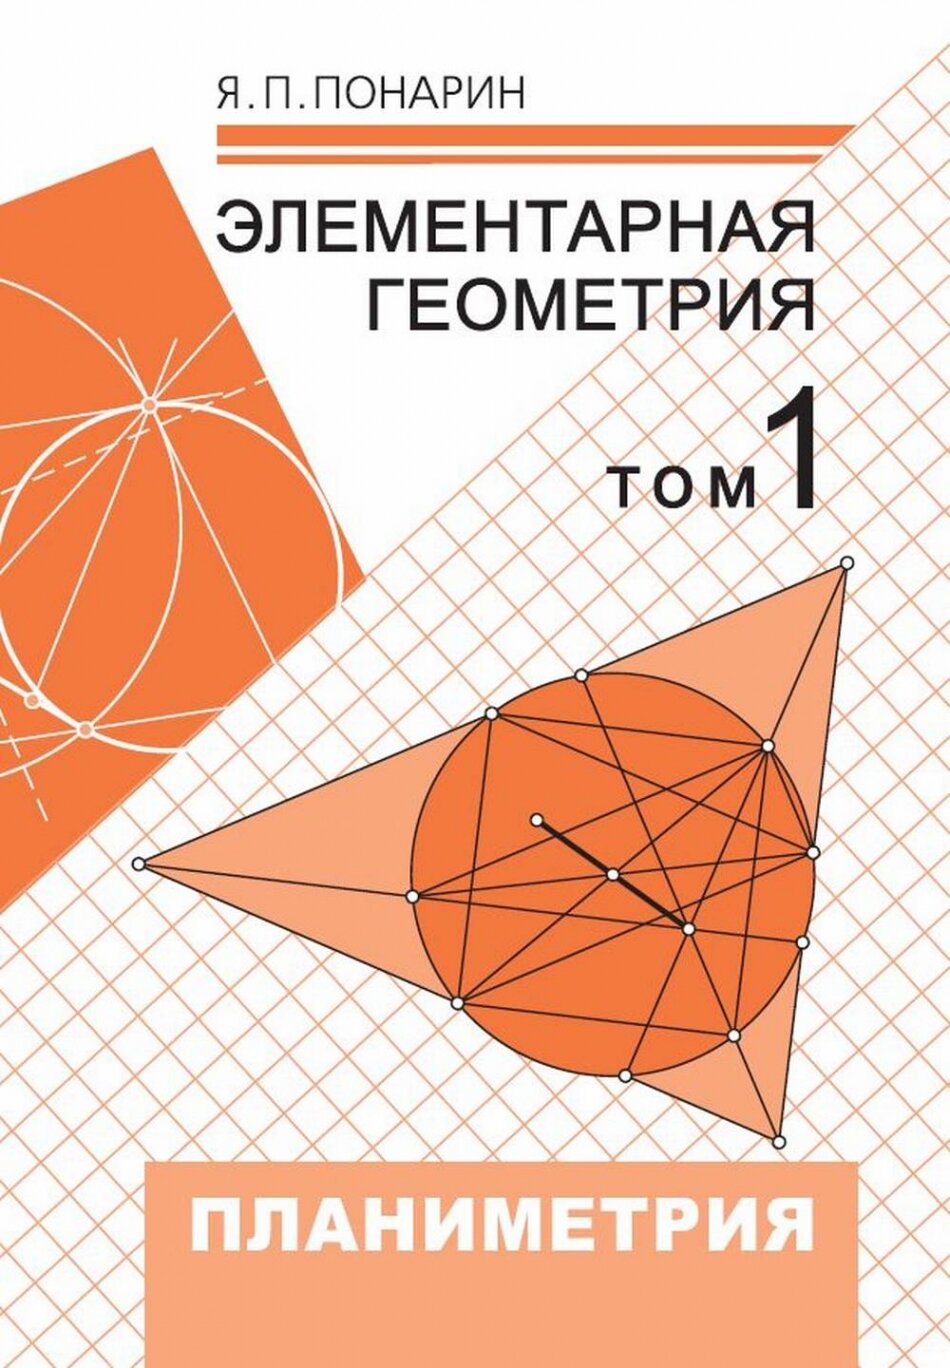 Элементарная геометрия. Том 1: Планиметрия, преобразования плоскости